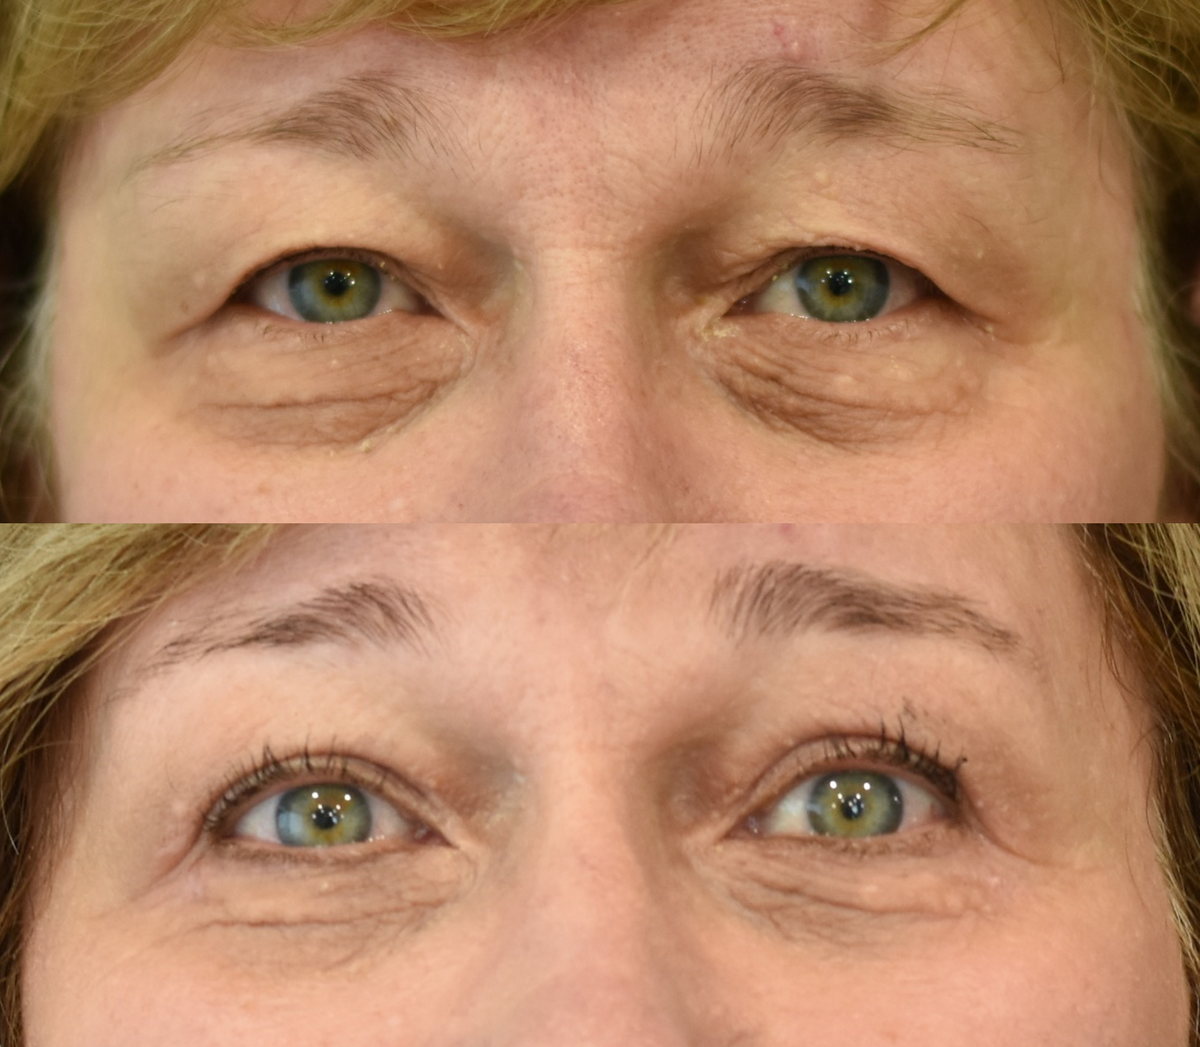 Upper Eyelid Surgery (Blepharoplasty) and Lower Eyelid Surgery (Blepharoplasty) Before & After in Cincinnati, Ohio